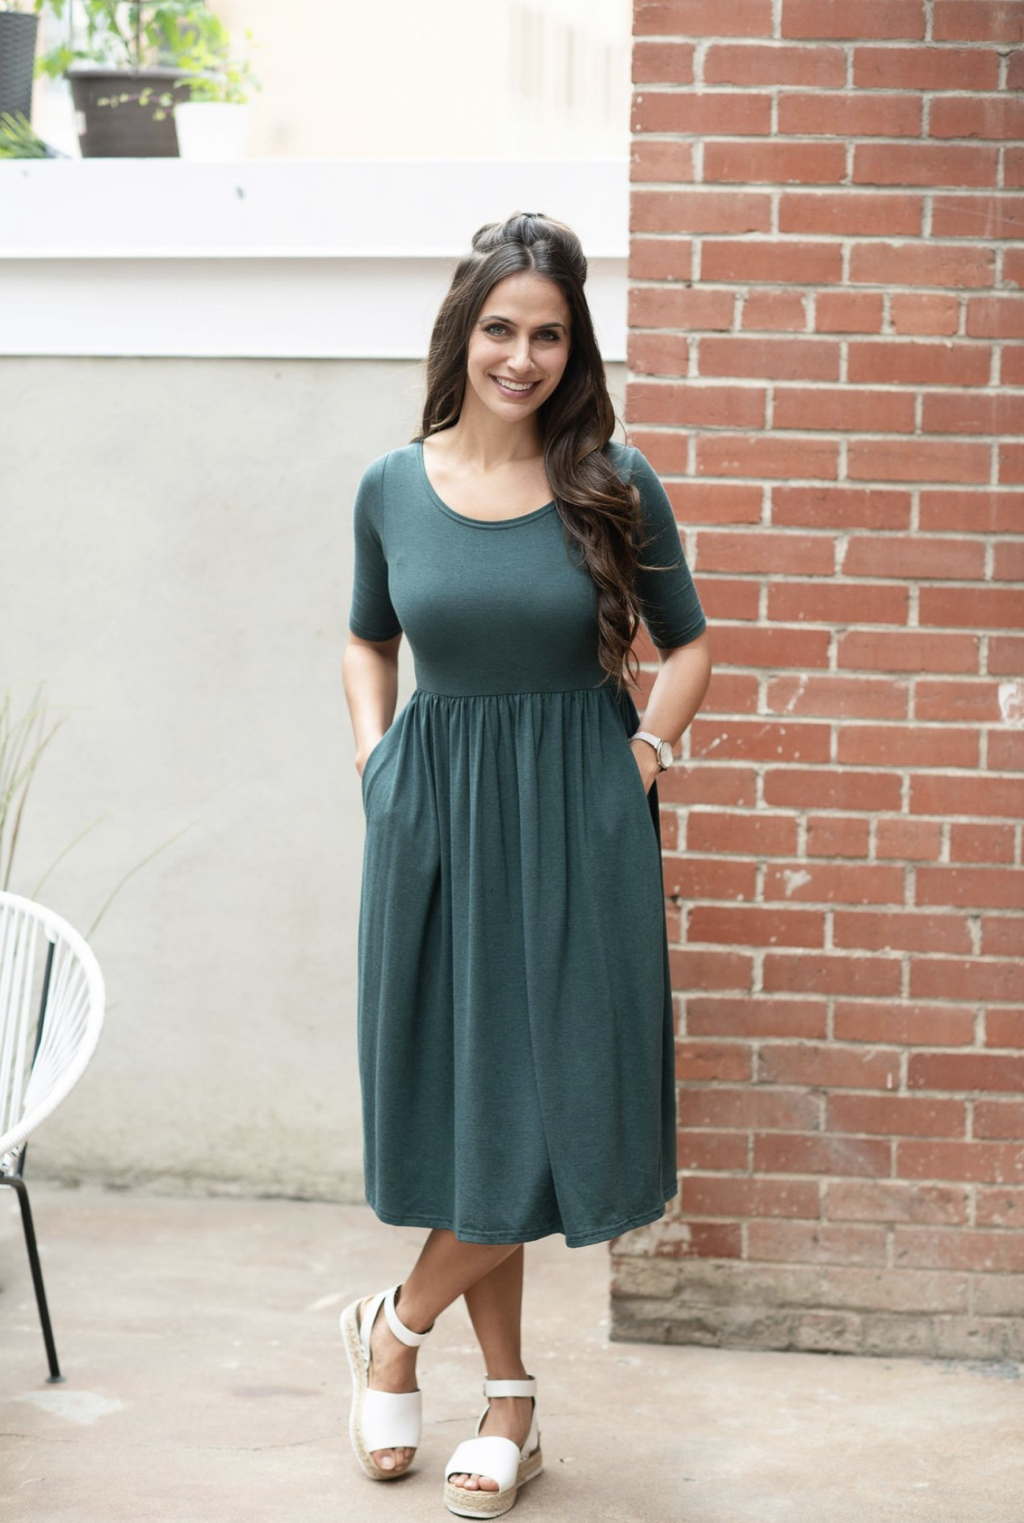 Buttercream Clothing Review: The Sundae Dress